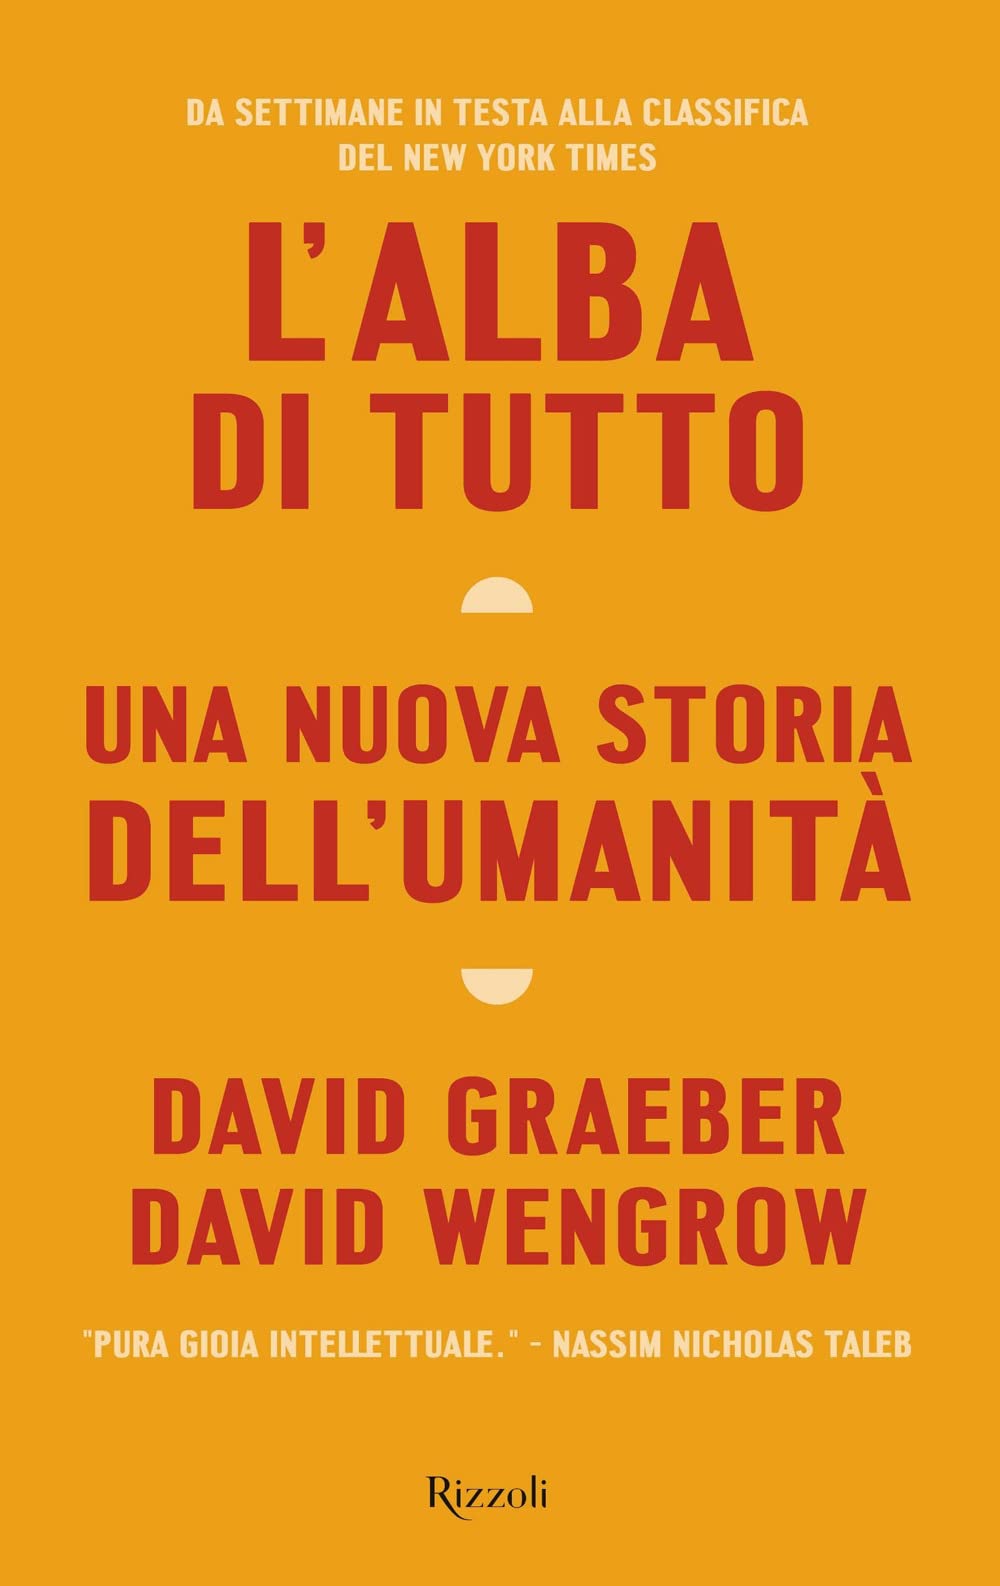 David Graeber, David Wengrow: L'alba di tutto (Hardcover, Italiano language, 2022, Rizzoli)